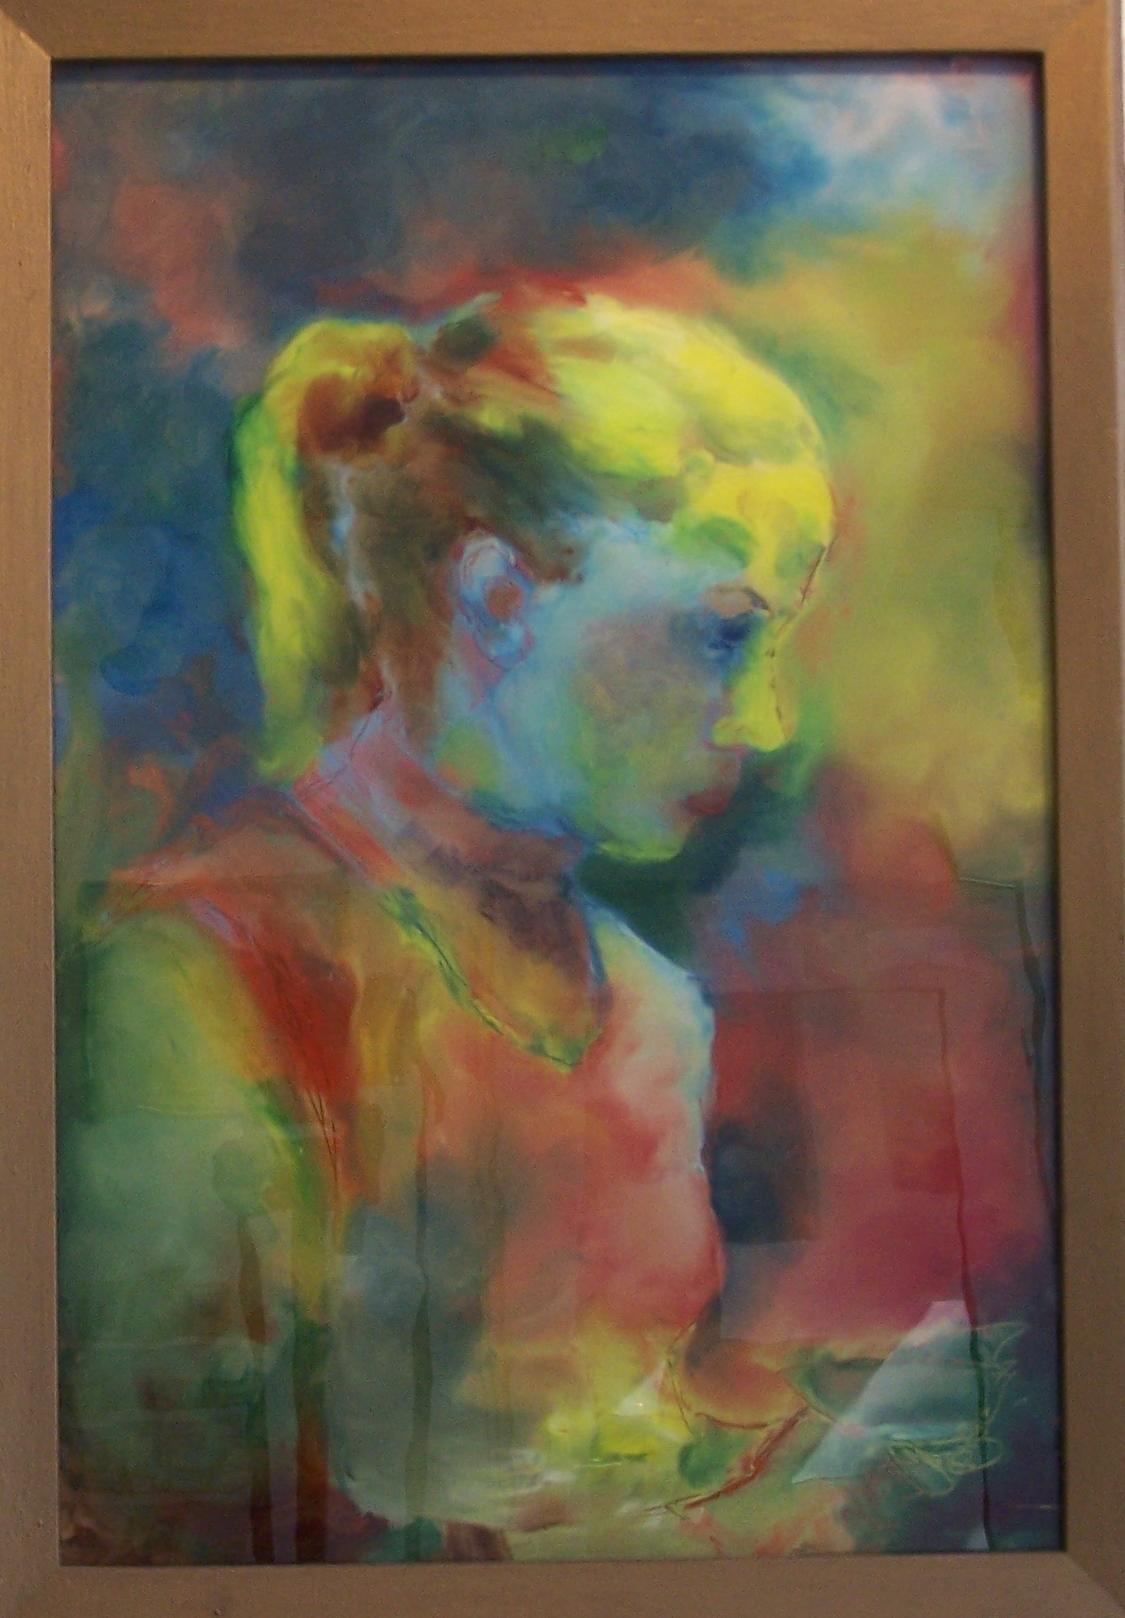 Brigitte Mauch: BrigitteHinterglasmalerei von Margret Hofheinz-Dring (1910 - 1994). Entstanden ist das Bild 1956 und hat die Gre 31 x 46 cm. Die Werksverzeichnis-Nummer lautet 340.